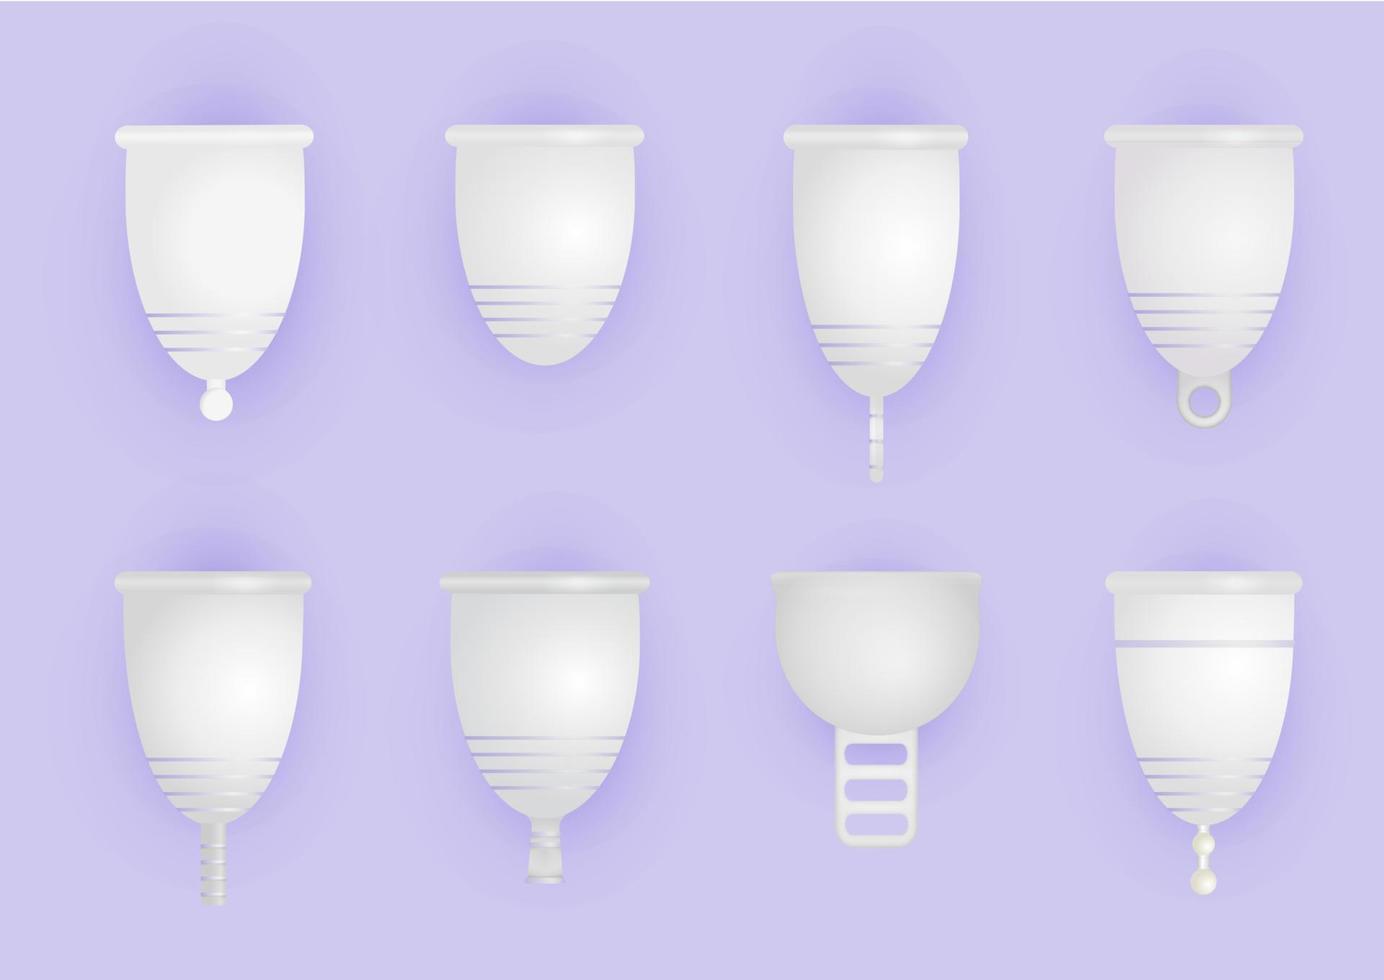 conjunto de diferentes copos menstruais de silicone. produto íntimo ecológico e lavável. zero desperdício de suprimentos para higiene pessoal. conceito sem plástico. Ilustração em vetor 3D realista de higiene da mulher.